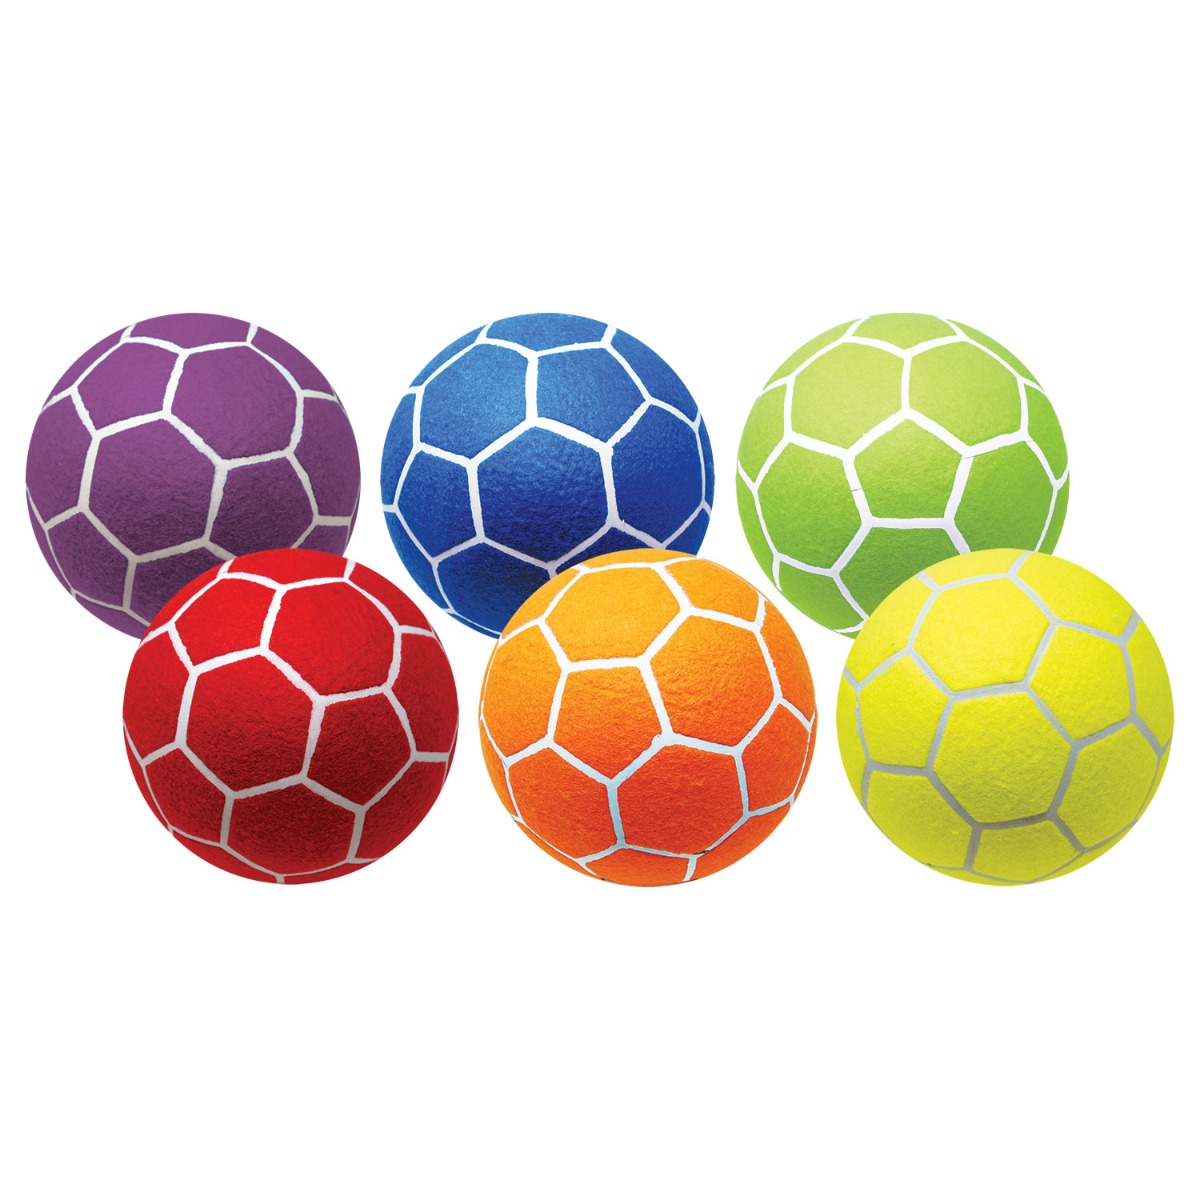 Felt Size 5 Indoor Soccer Ball 6-Color Set of 6